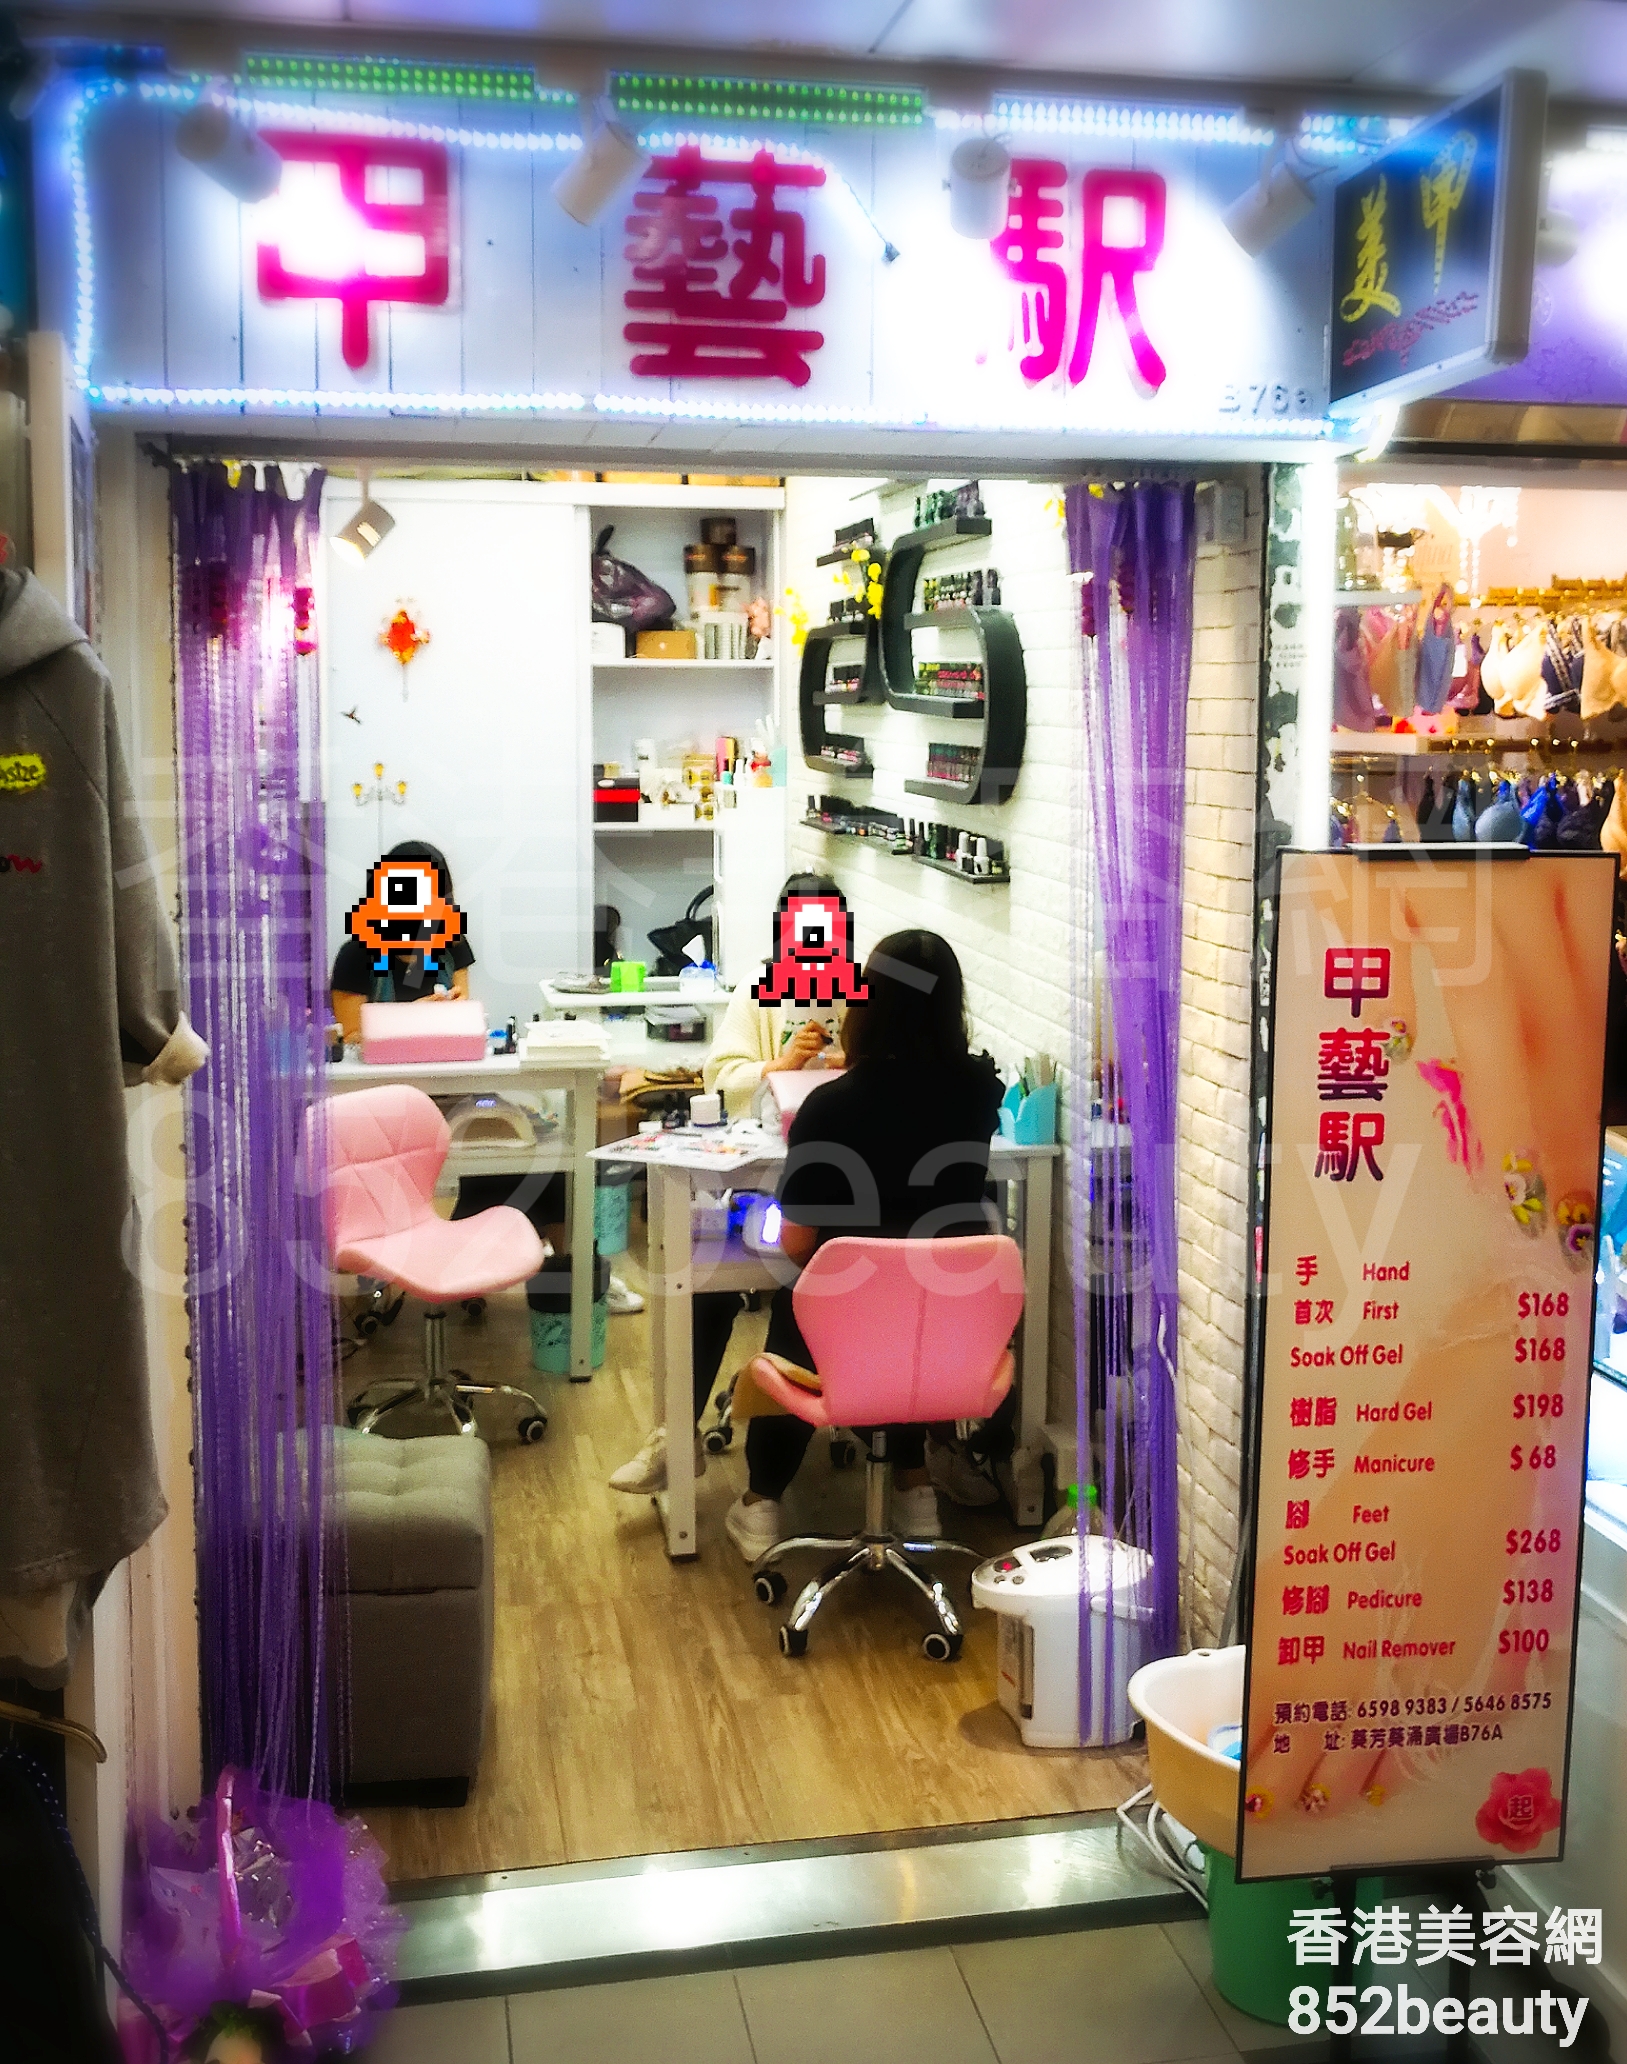 香港美容網 Hong Kong Beauty Salon 美容院 / 美容師: 甲藝駅